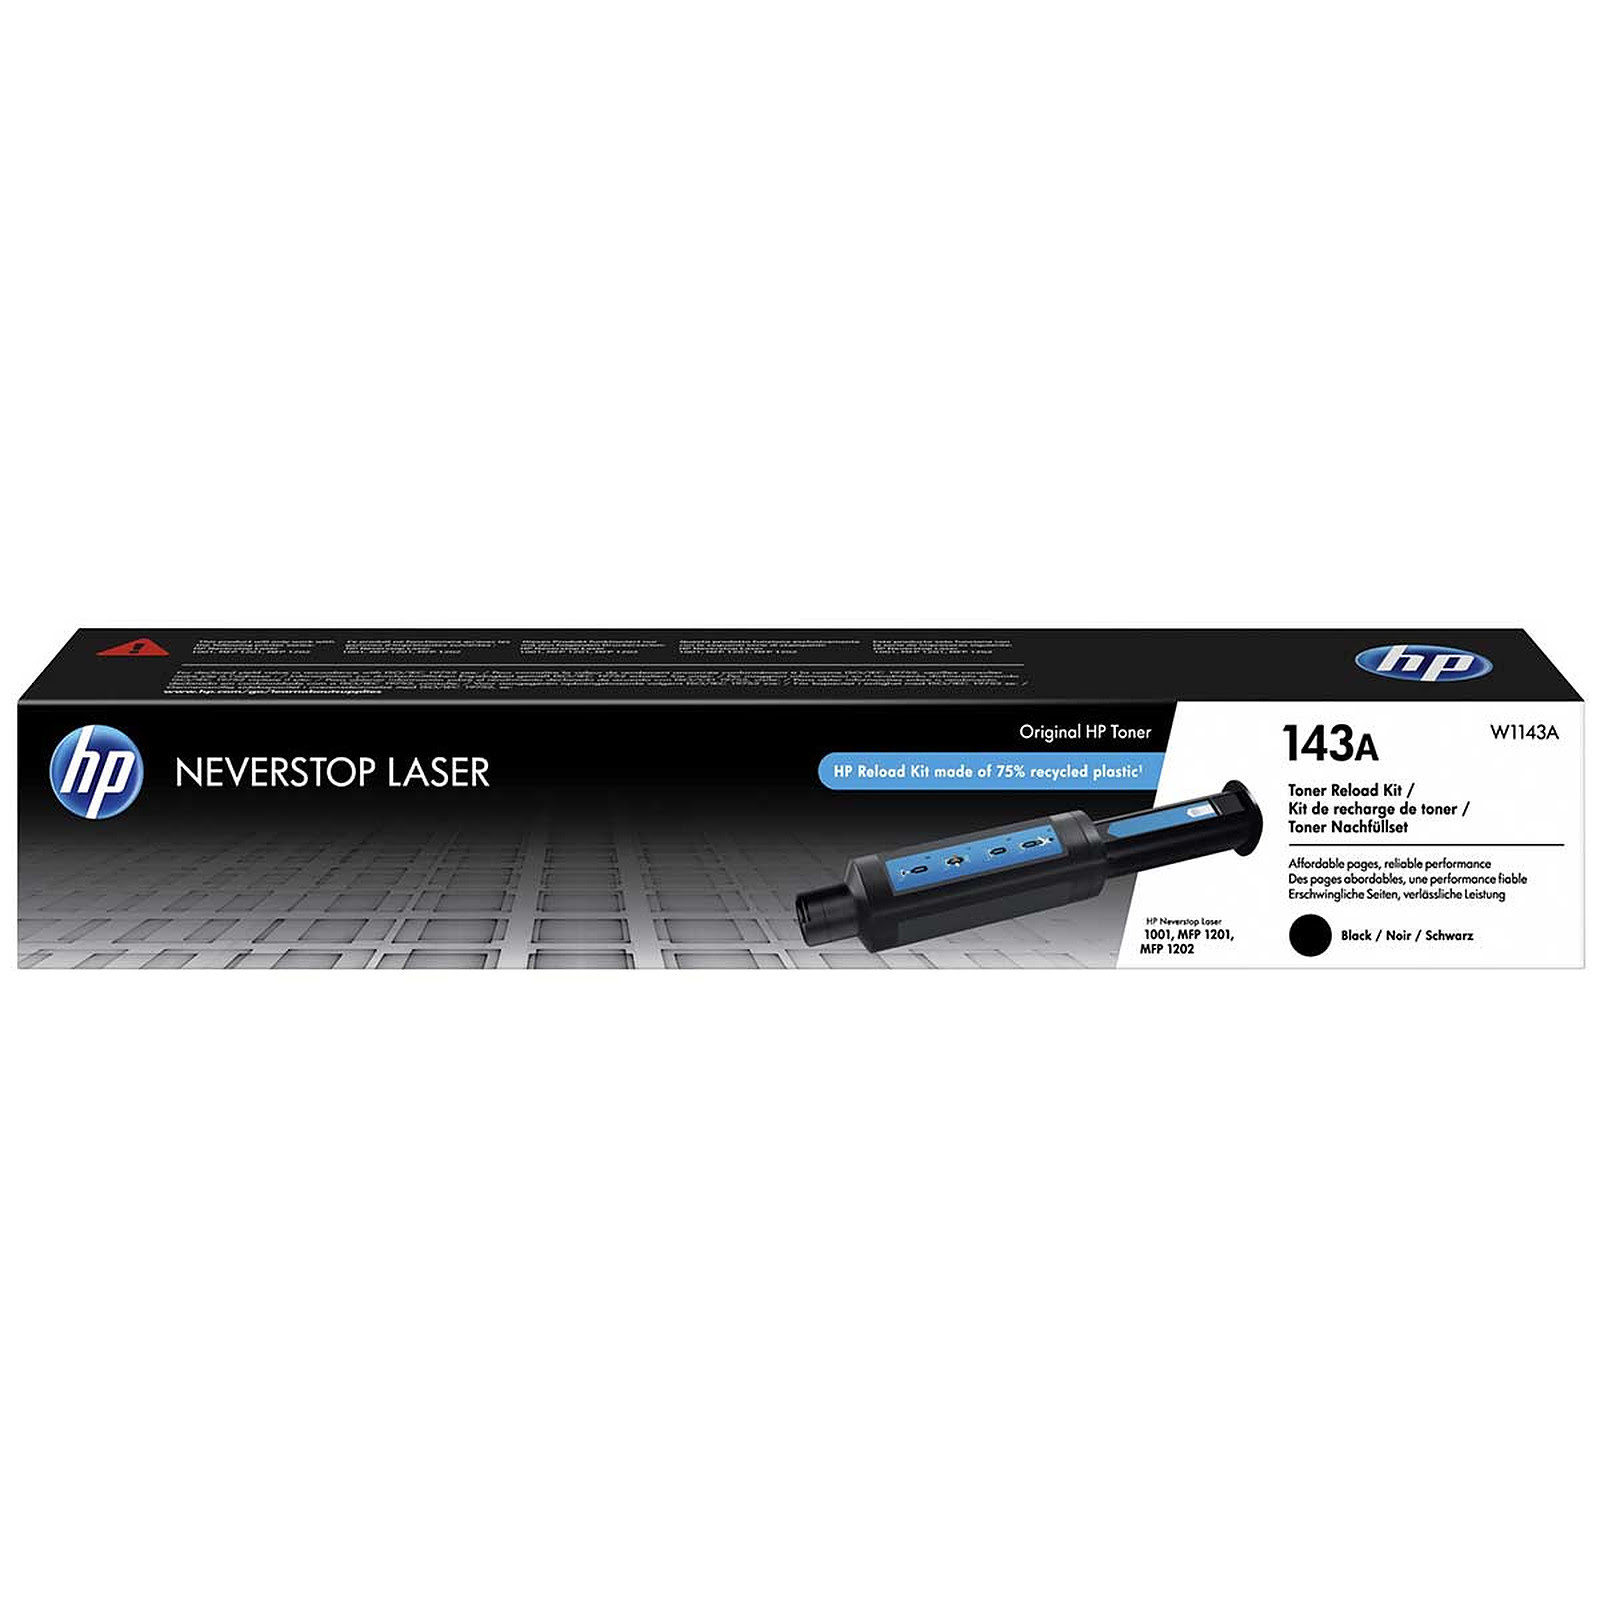 Toner noir 143A Neverstop 2500 pages - W1143A pour imprimante Laser HP - 0